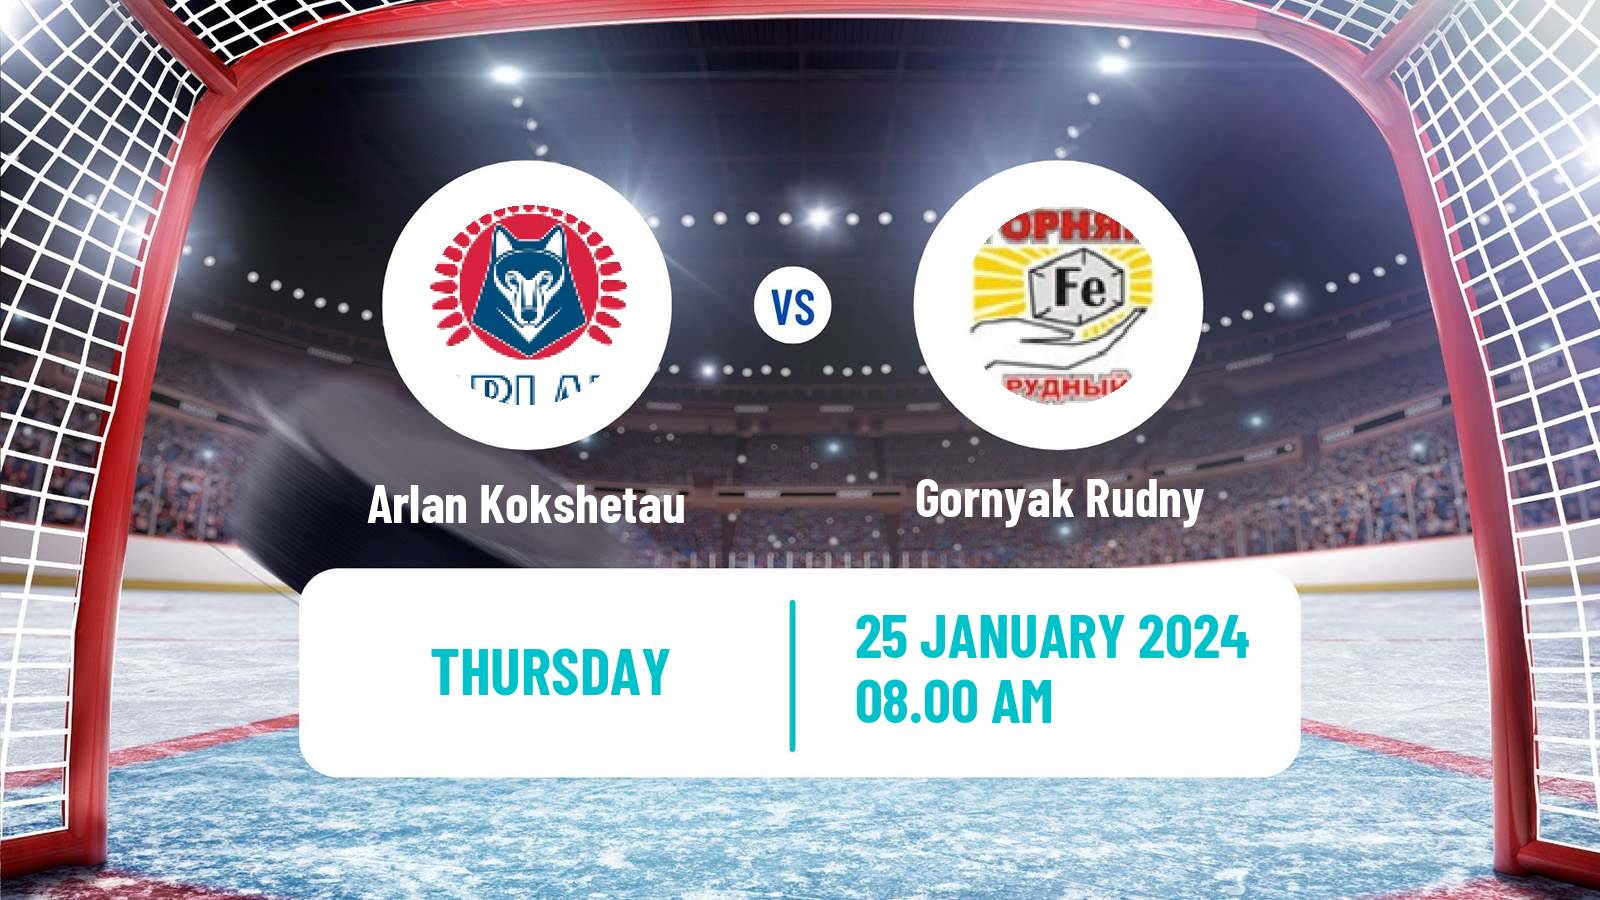 Hockey Kazakh Ice Hockey Championship Arlan Kokshetau - Gornyak Rudny